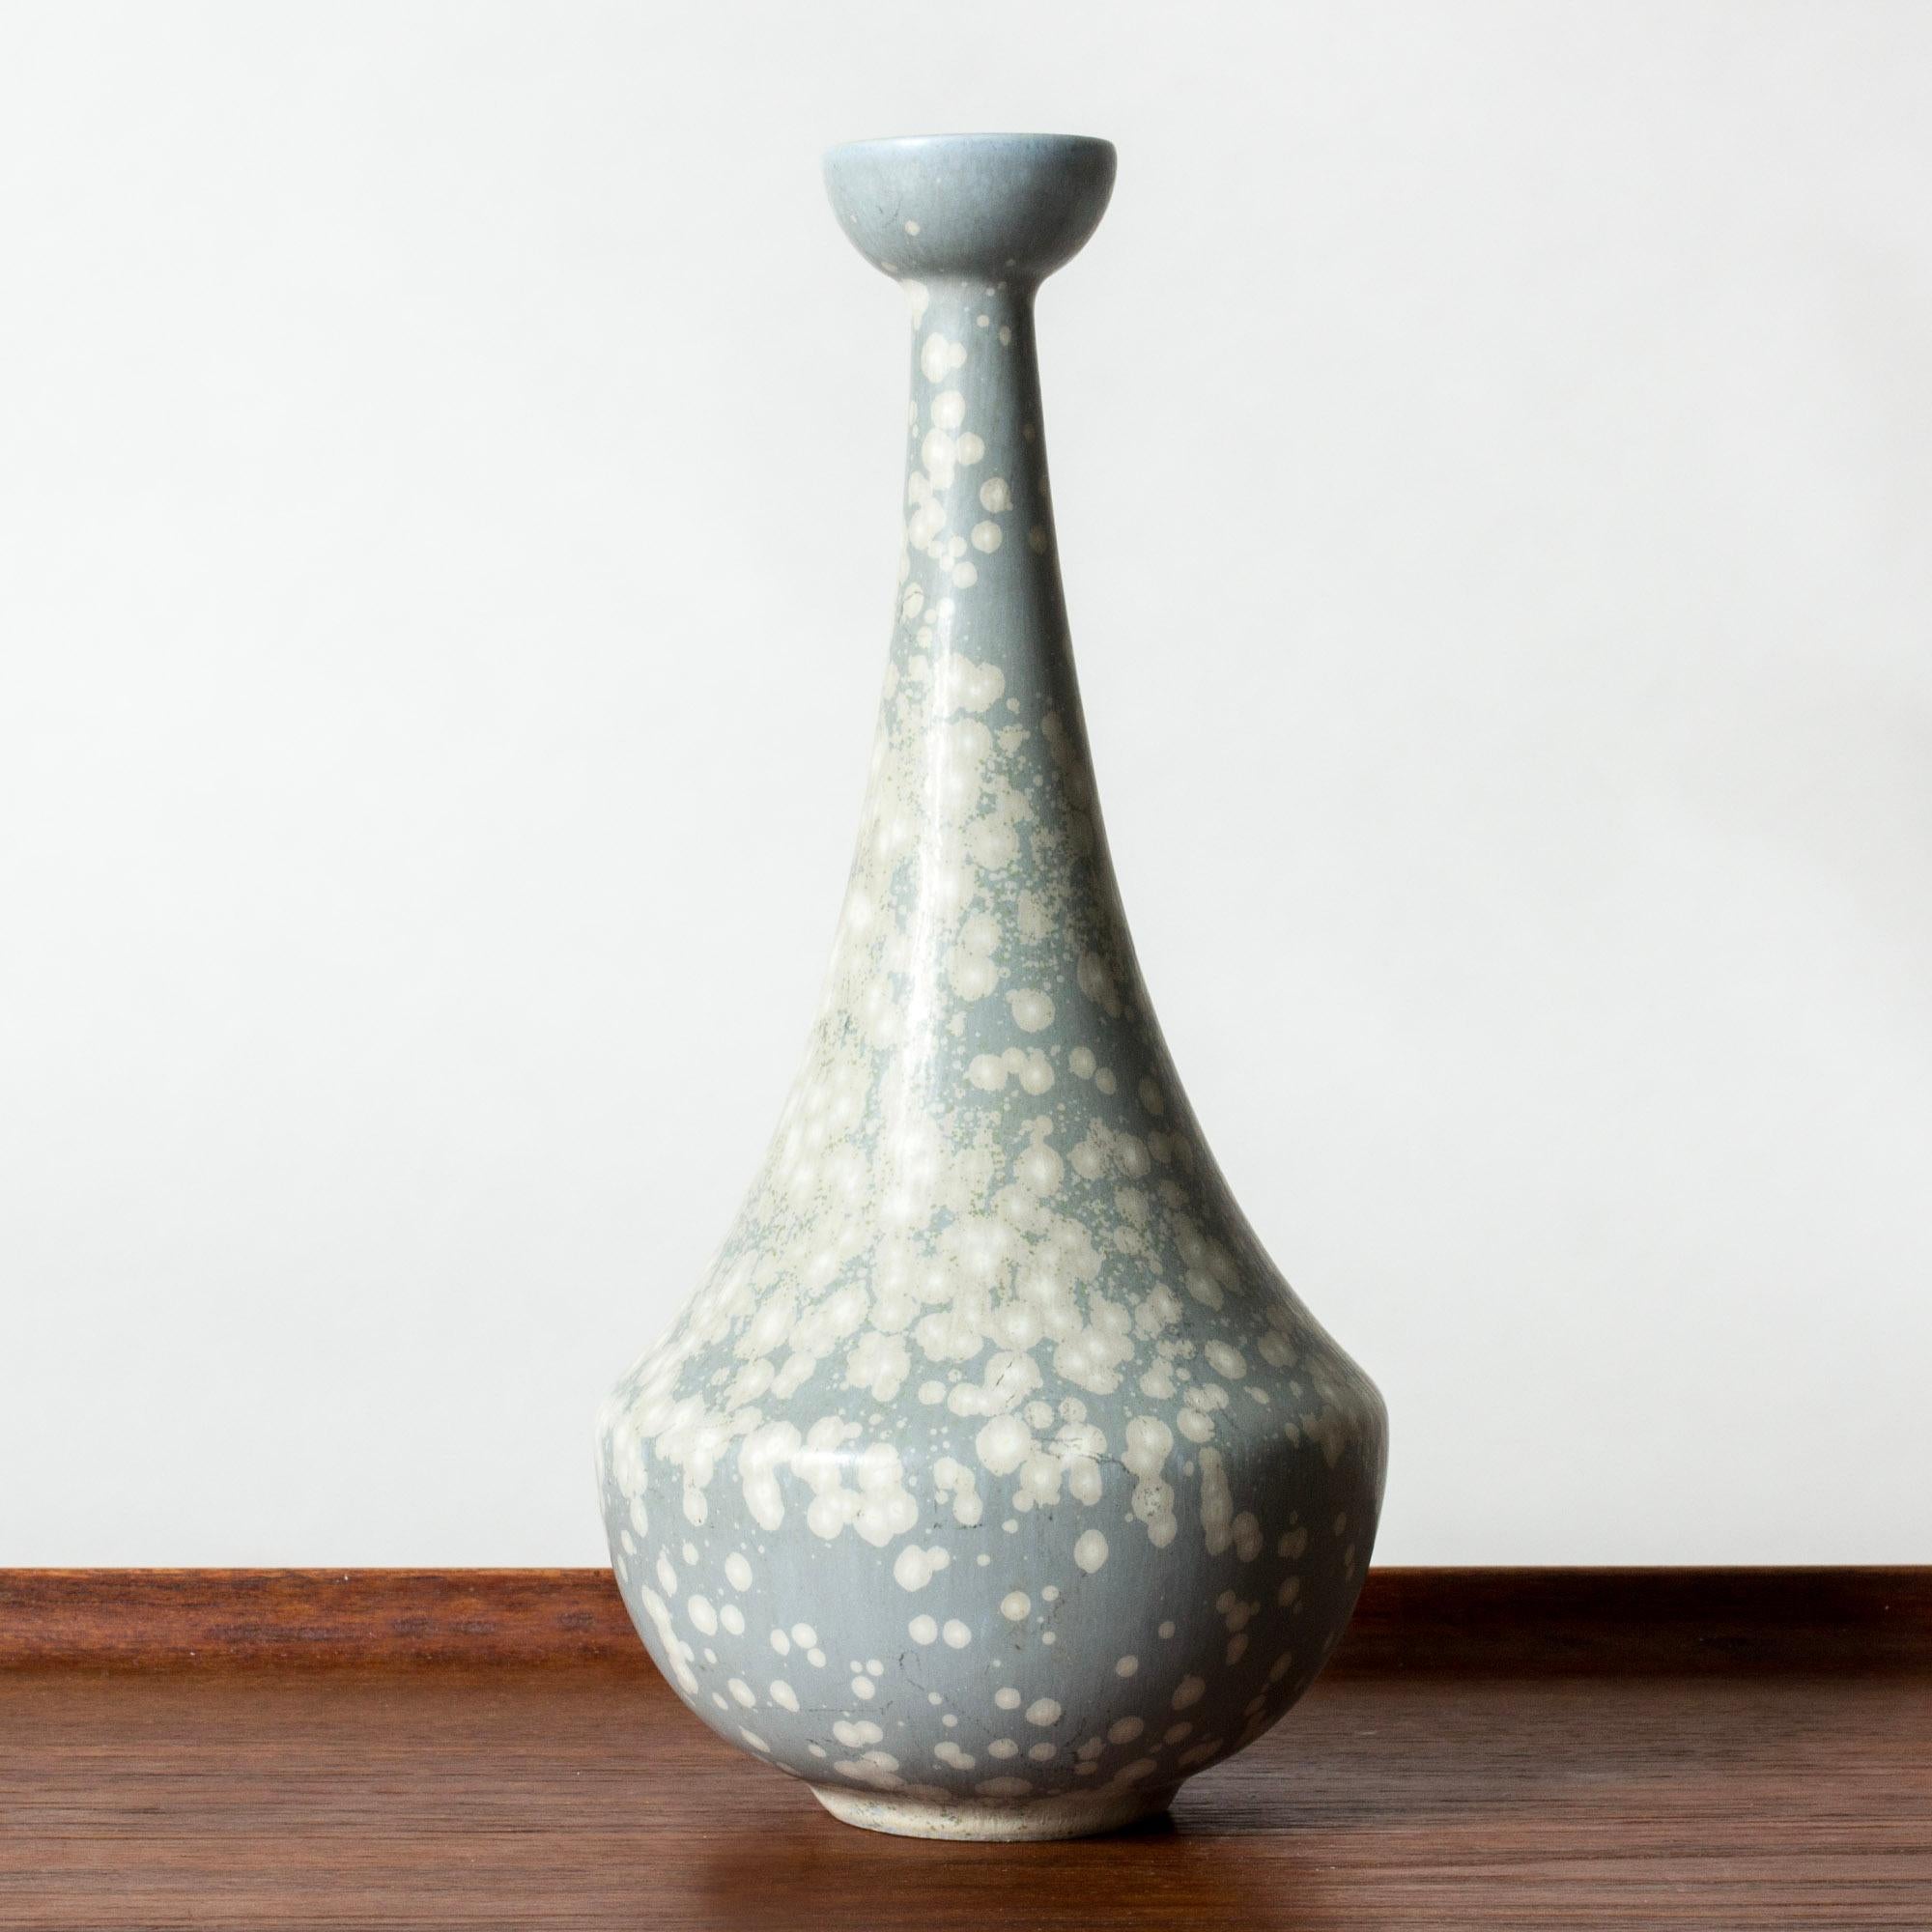 Joli vase en grès de Gunnar Nylund, de forme courbée et effilée. Glacé bleu pâle avec un motif blanc 